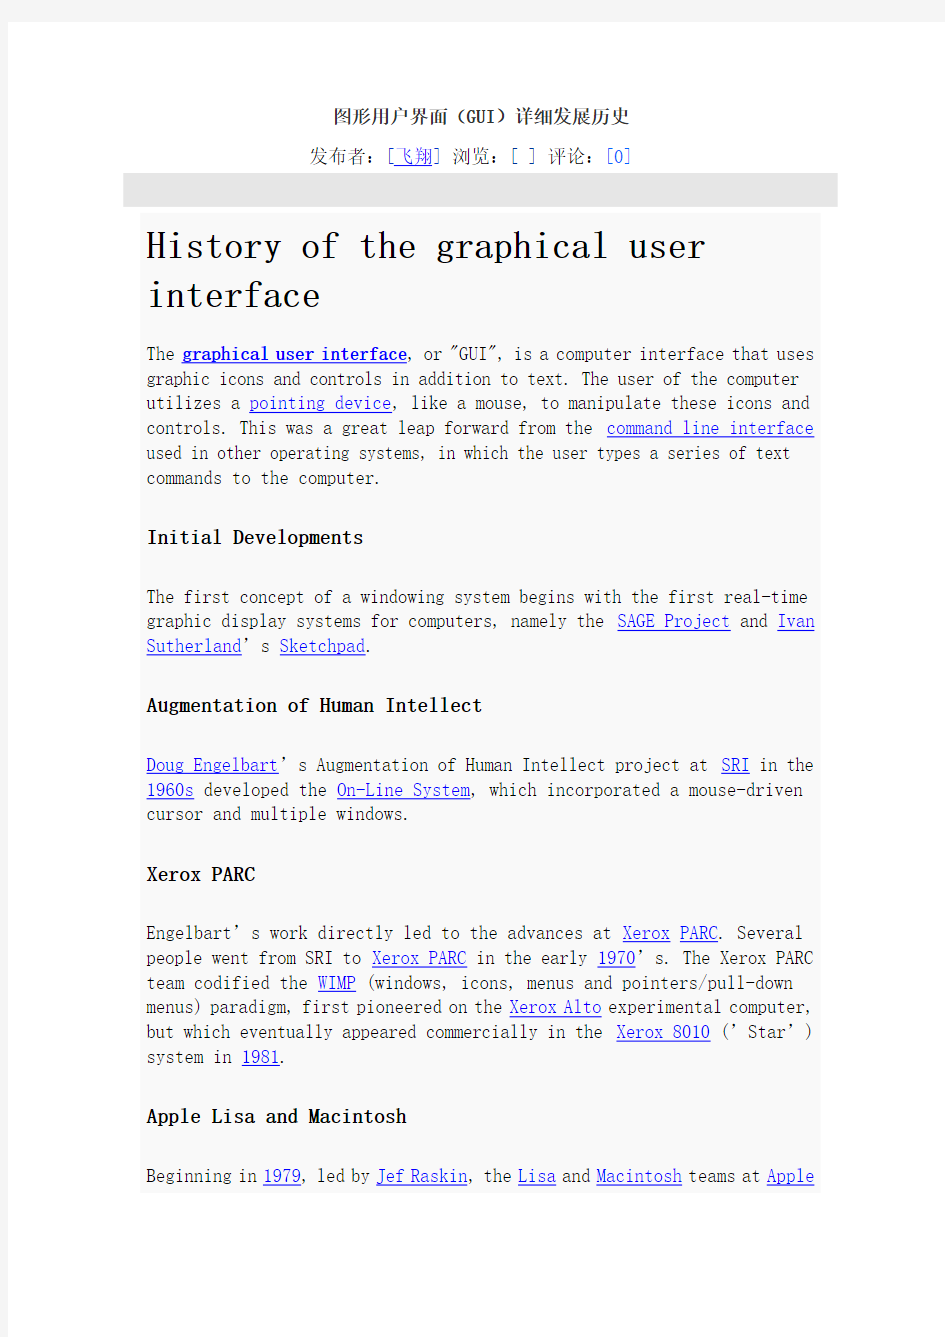 图形用户界面(GUI)详细发展历史